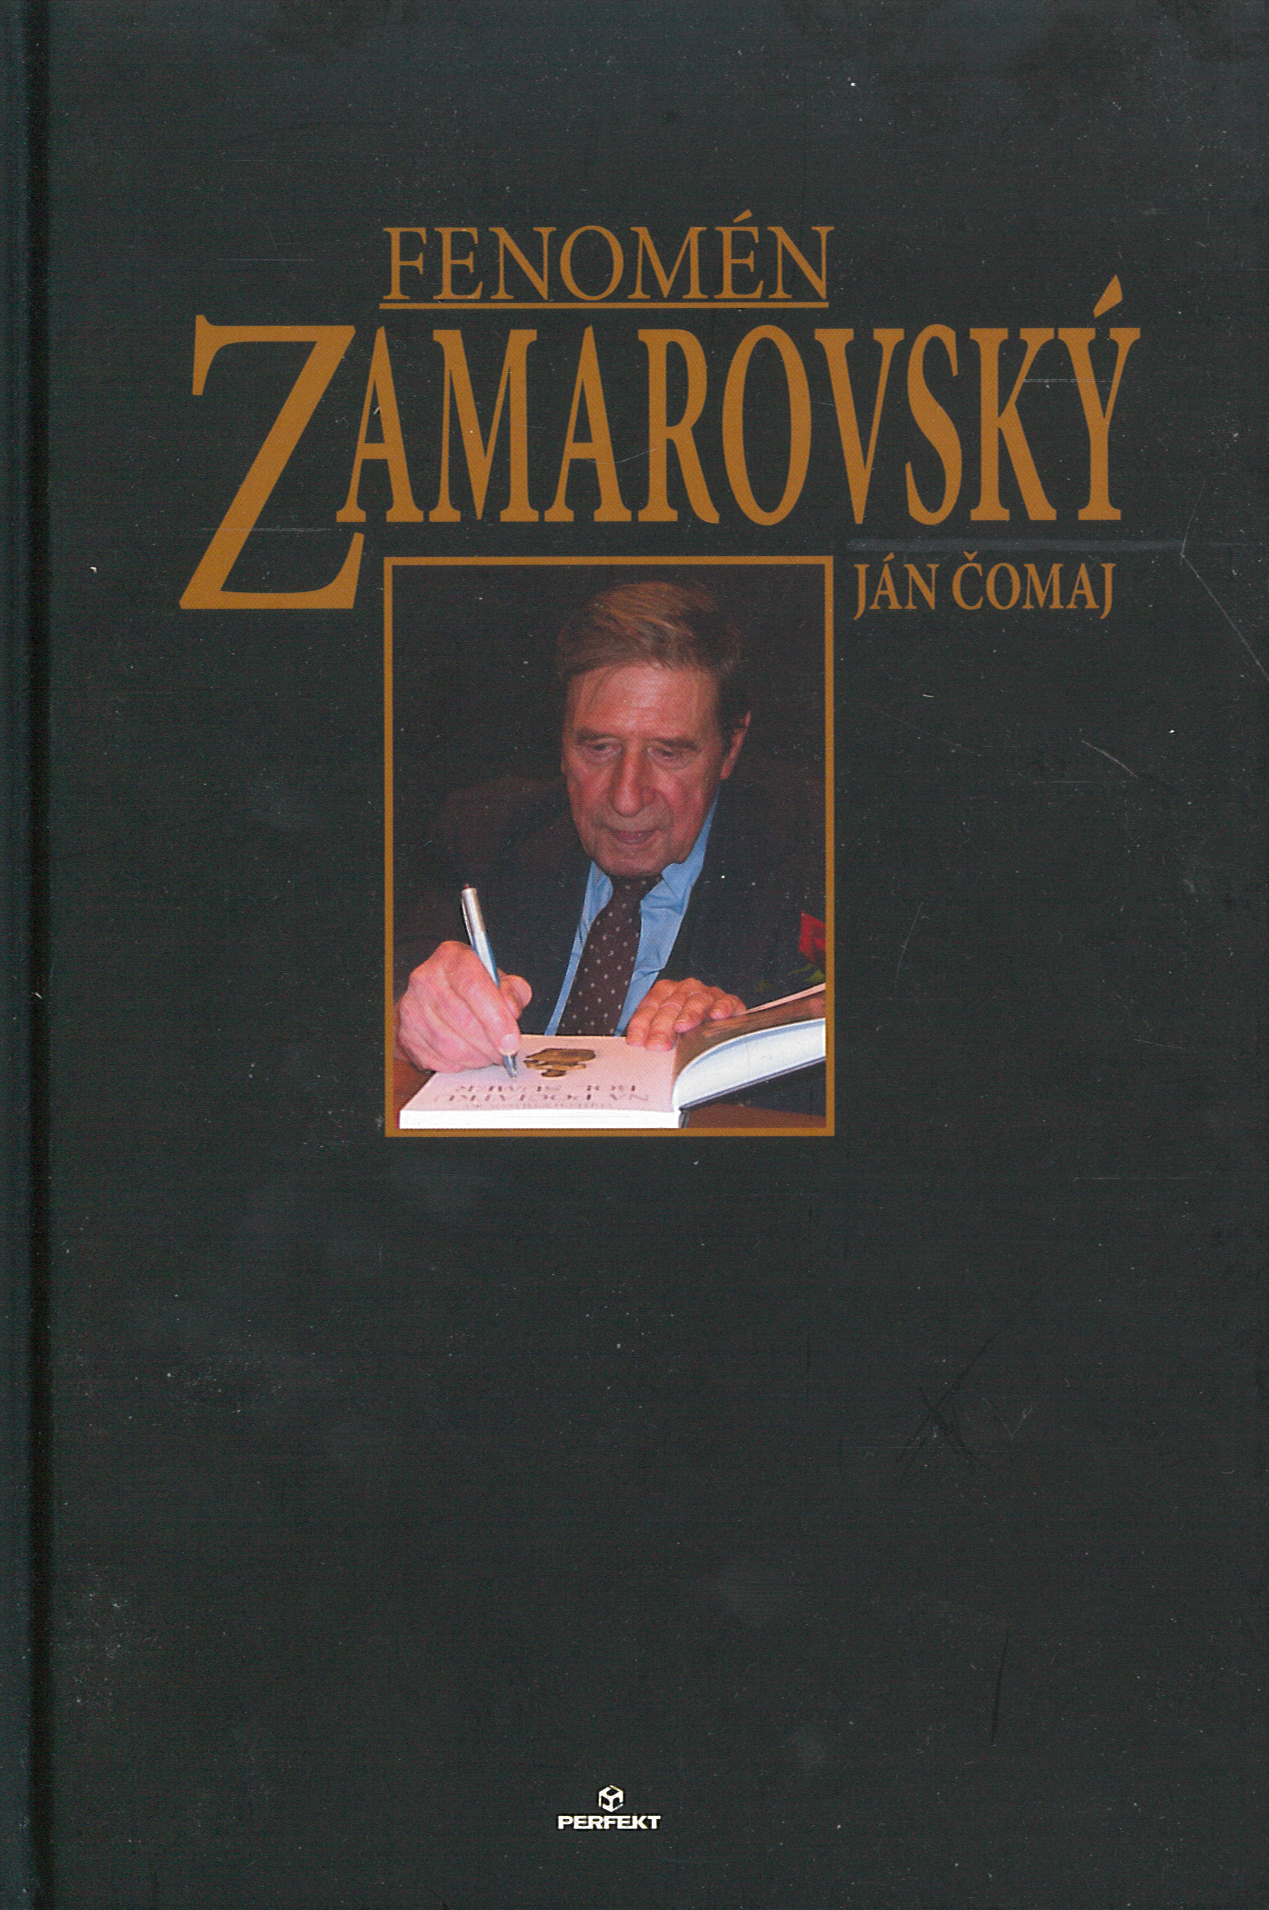 Fenomén Zamarovský (Ján Čomaj)